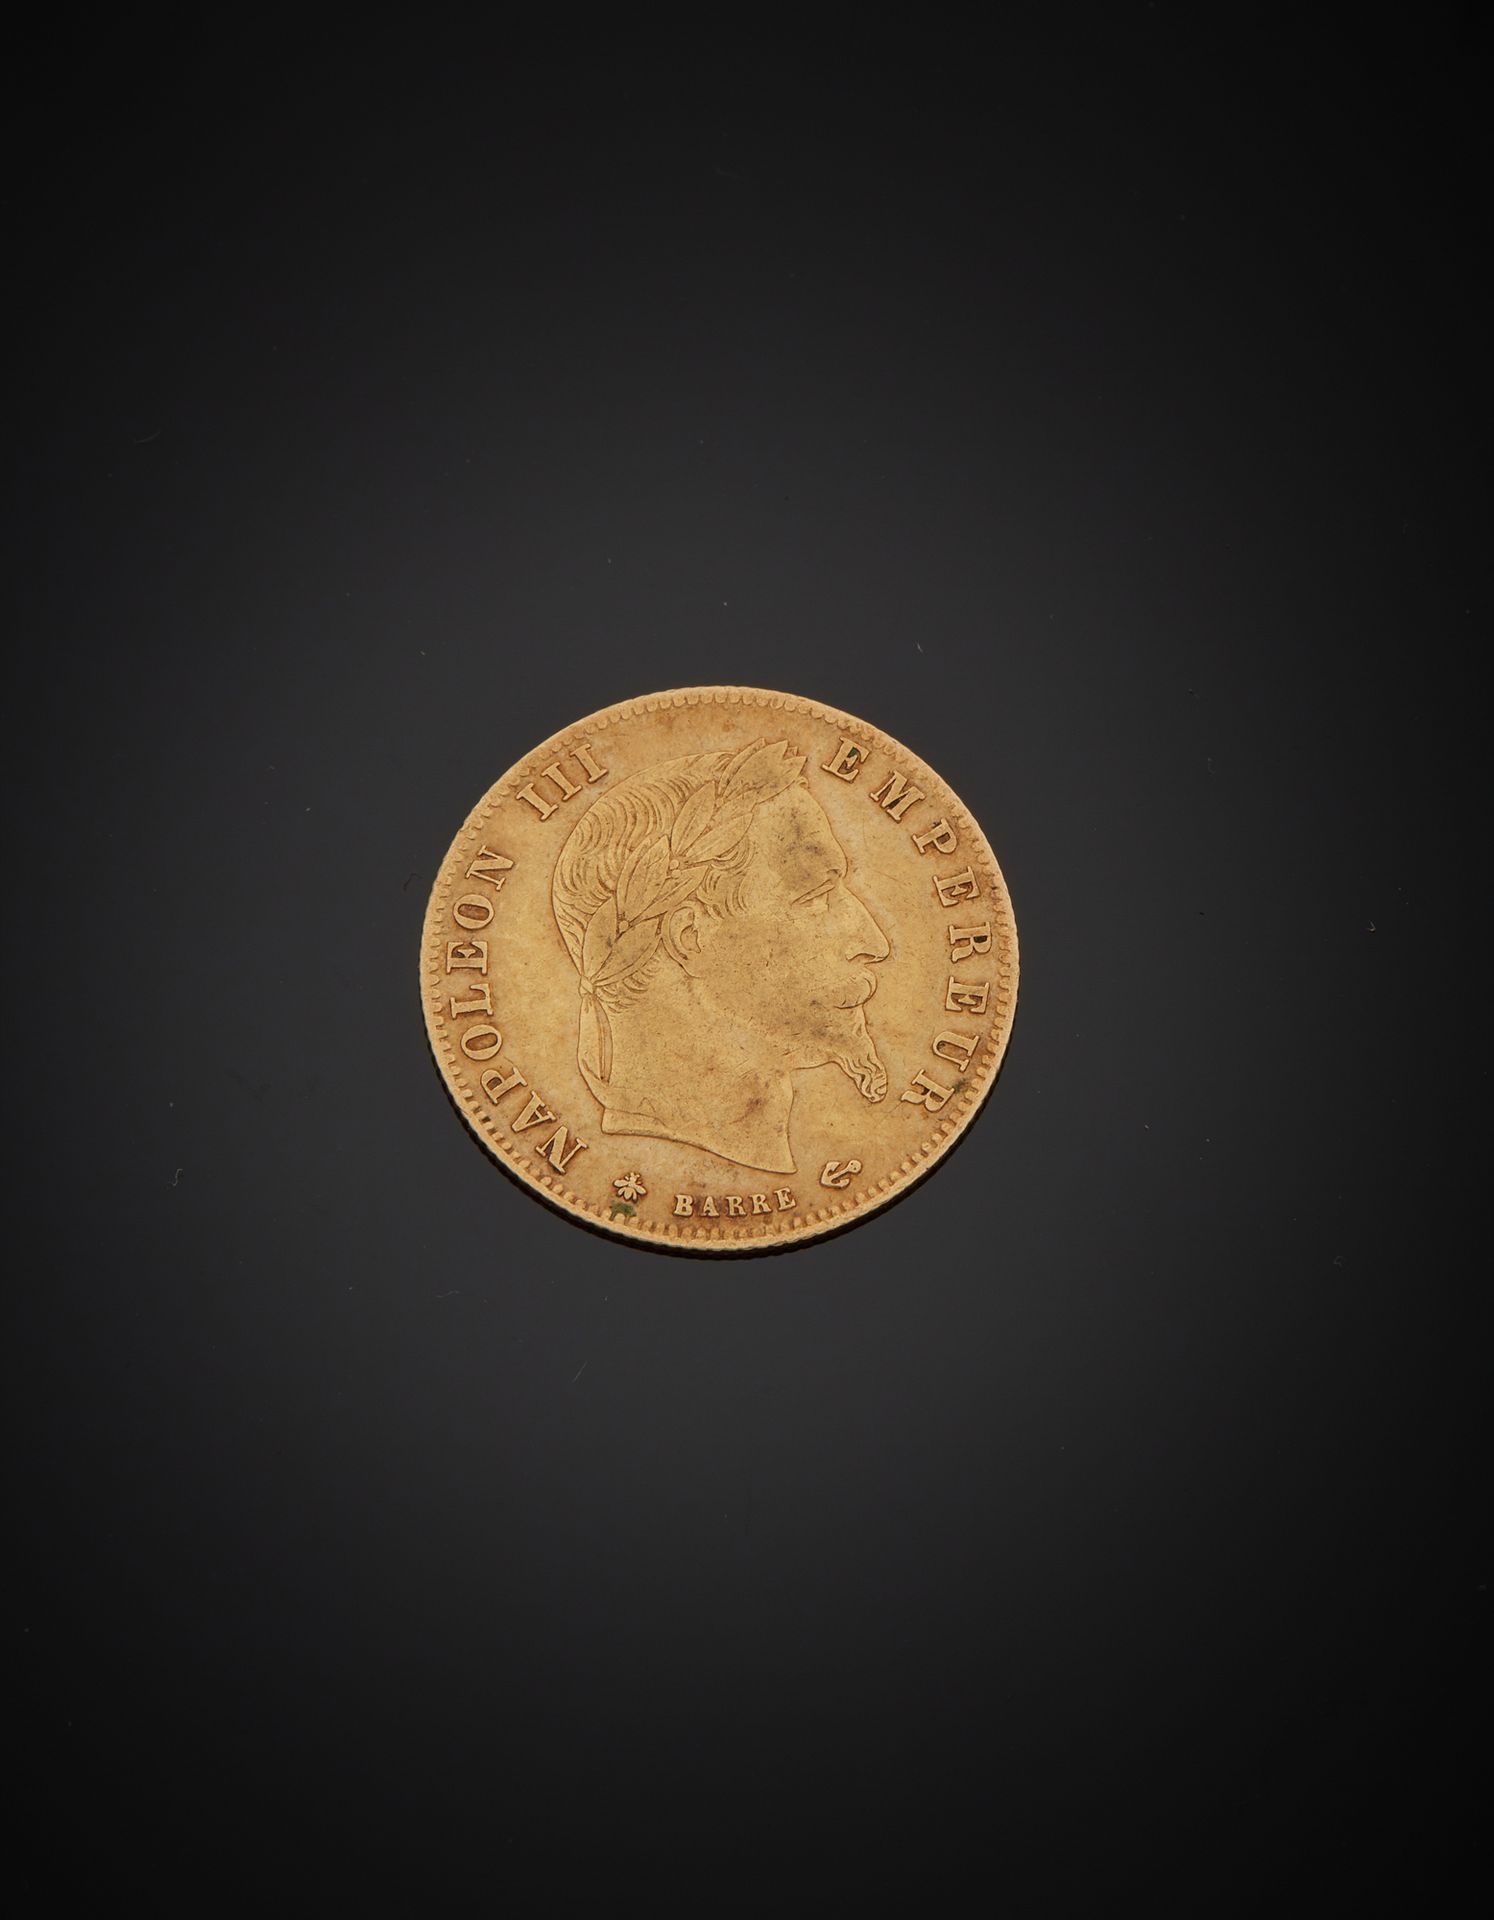 Null Moneda de oro de 5 francos, cabeza de Napoleón III, 1866. Peso 1,50 g